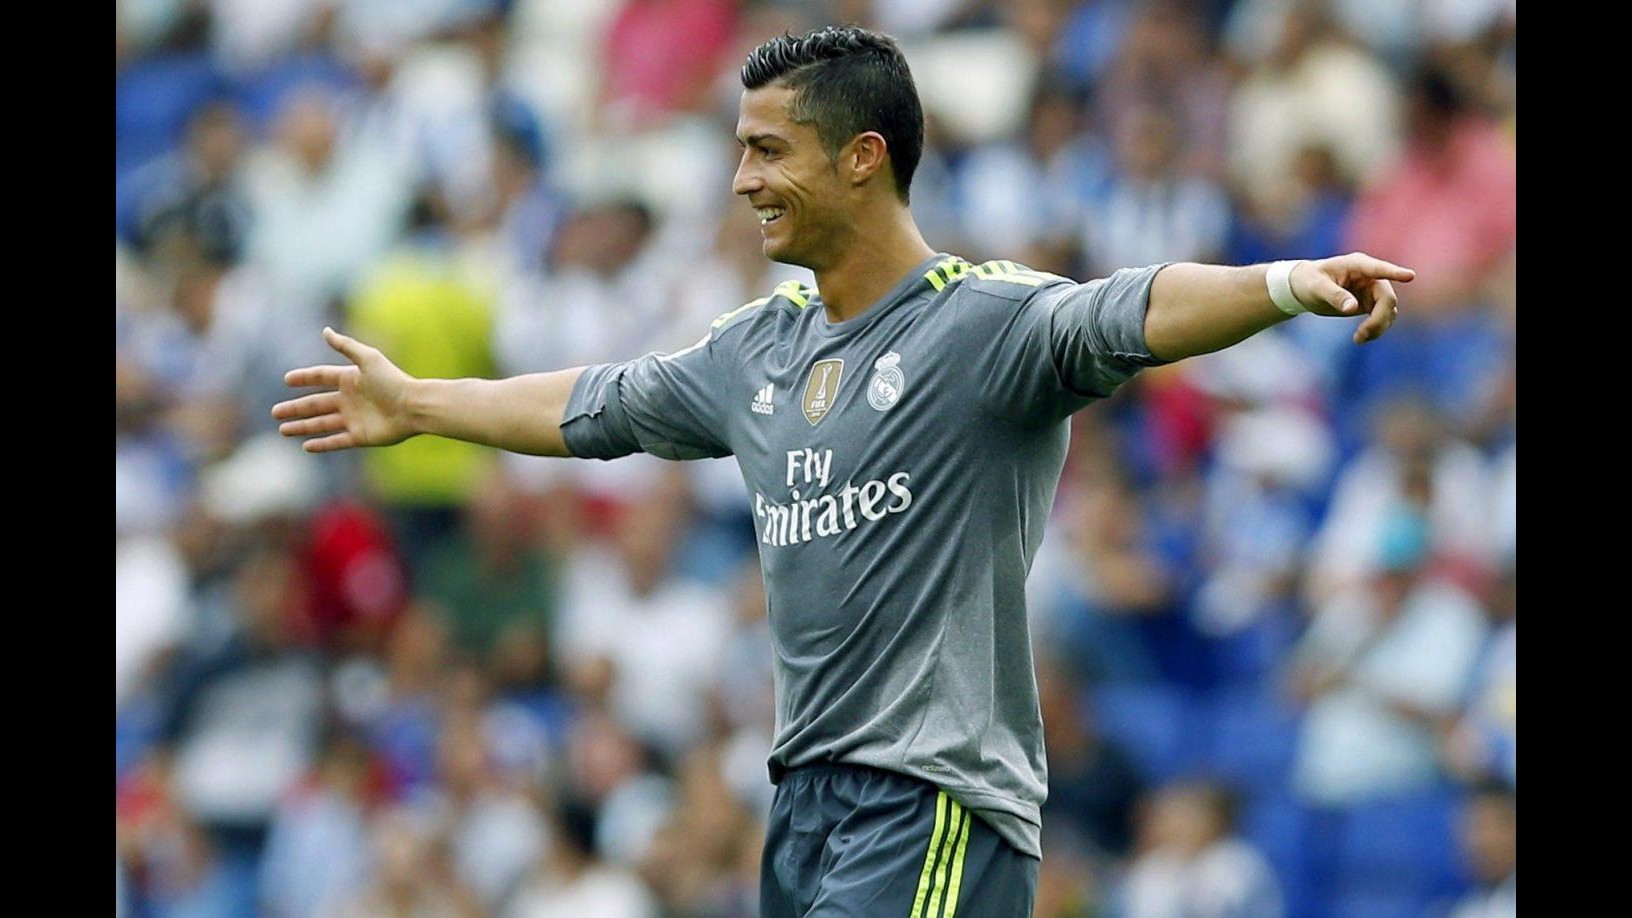 Calcio, Ronaldo eguaglia record Raul: Mio futuro ancora al Real Madrid